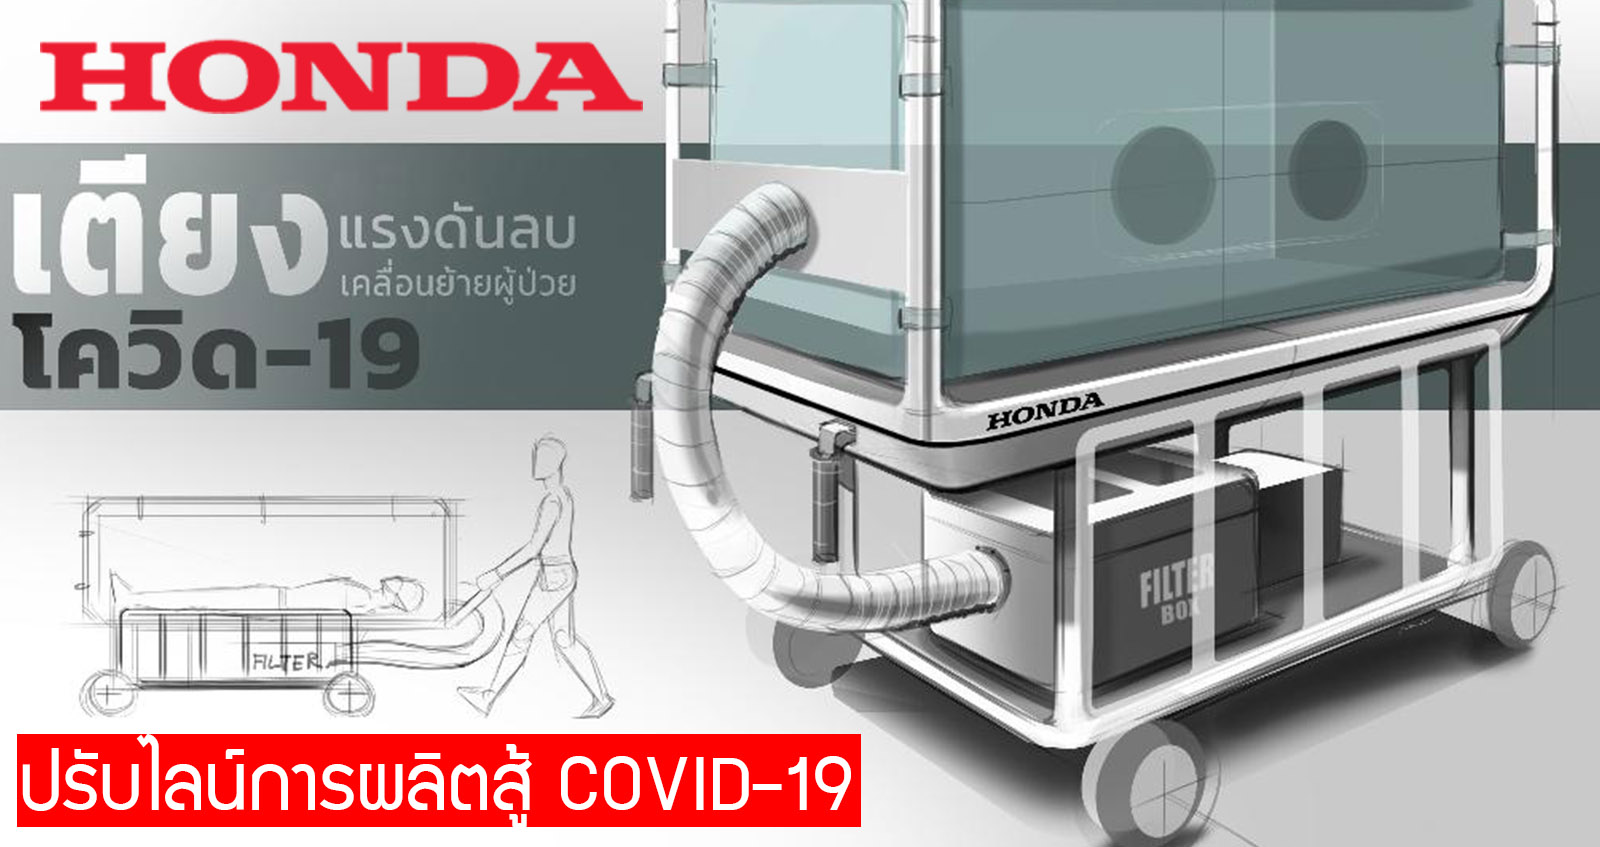 HONDA ไทย ปรับไลน์ผลิต เตียงแรงดันลม สำหรับเคลื่อนย้ายผู้ป่วย COVID-19